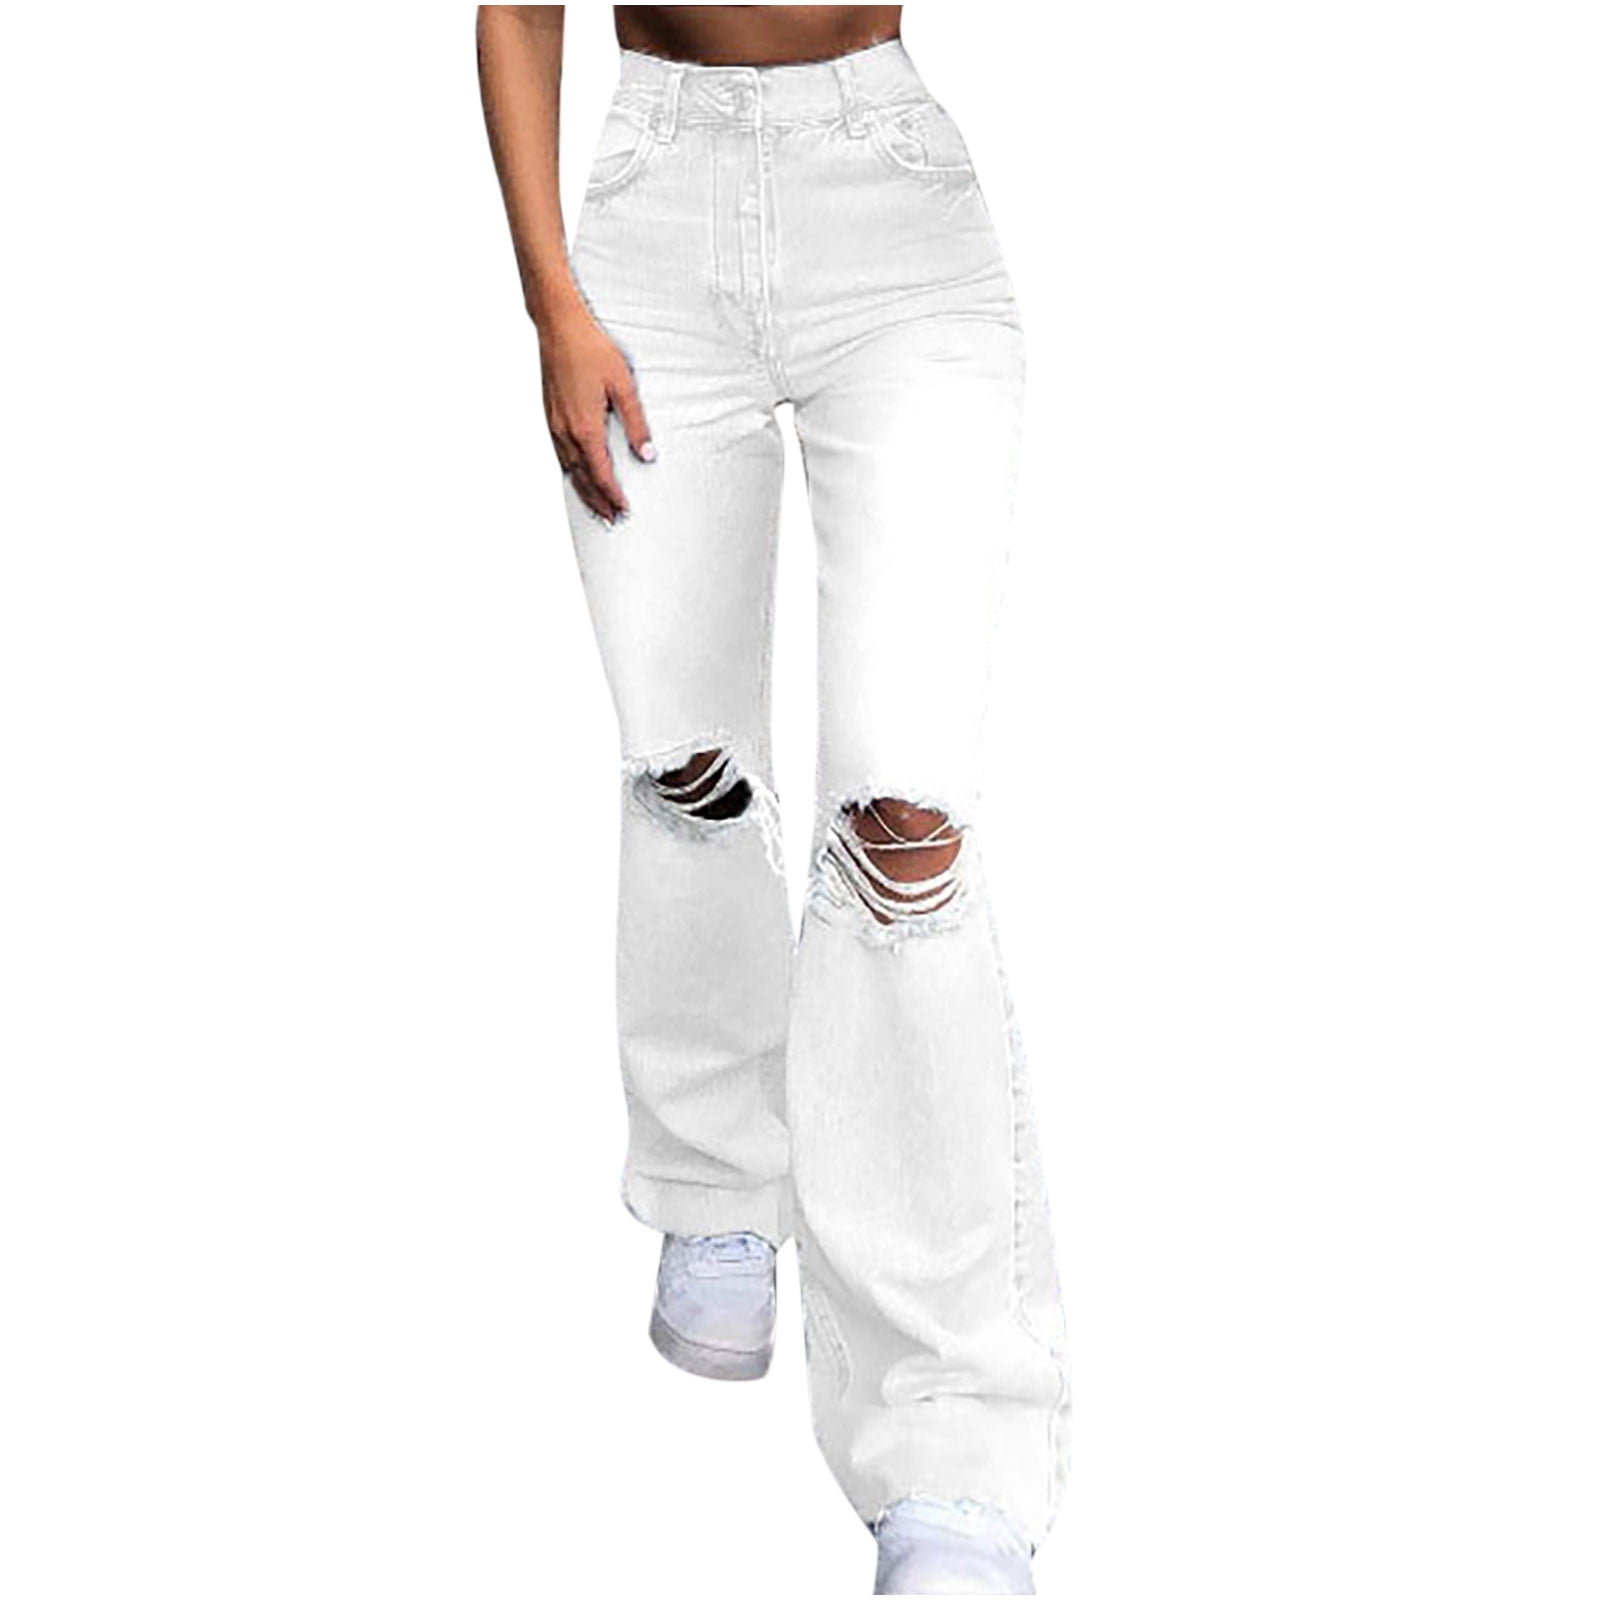 Bootleg Pants High Waist Jeans Women's Retro Loose Wide Leg - CJdropshipping